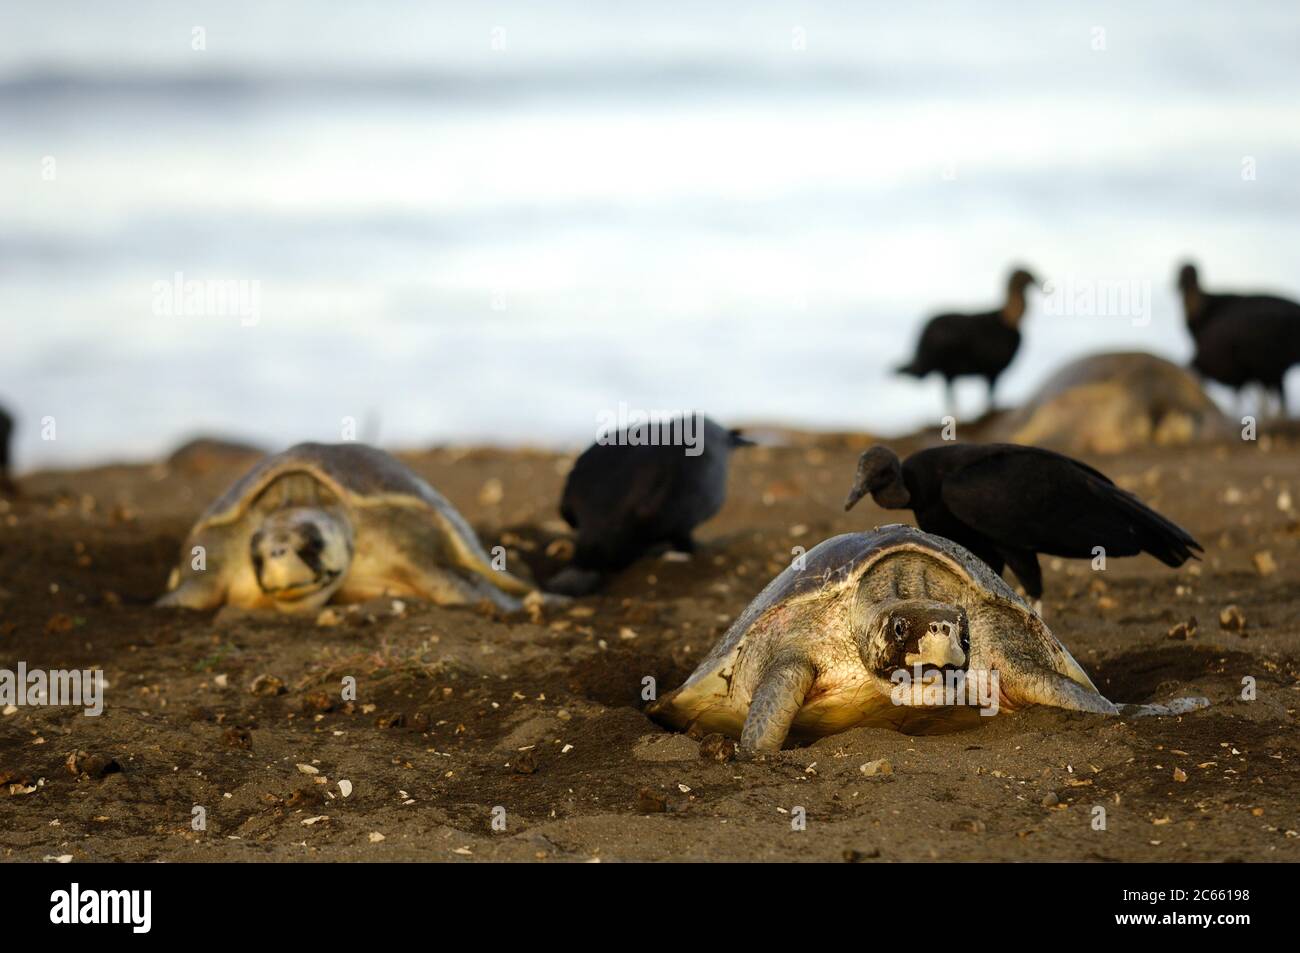 Tandis que la tortue de mer ridley femelle (Lepidochelys olivacea) pond ses environ 100 oeufs dans le trou de nid, elle ne peut pas bouger. Il n'y a donc rien que la tortue mère puisse faire contre les vautours noirs (Coragyps atratus) qui se cachent pour voler certains des oeufs pendant qu'ils sont tombés. Banque D'Images